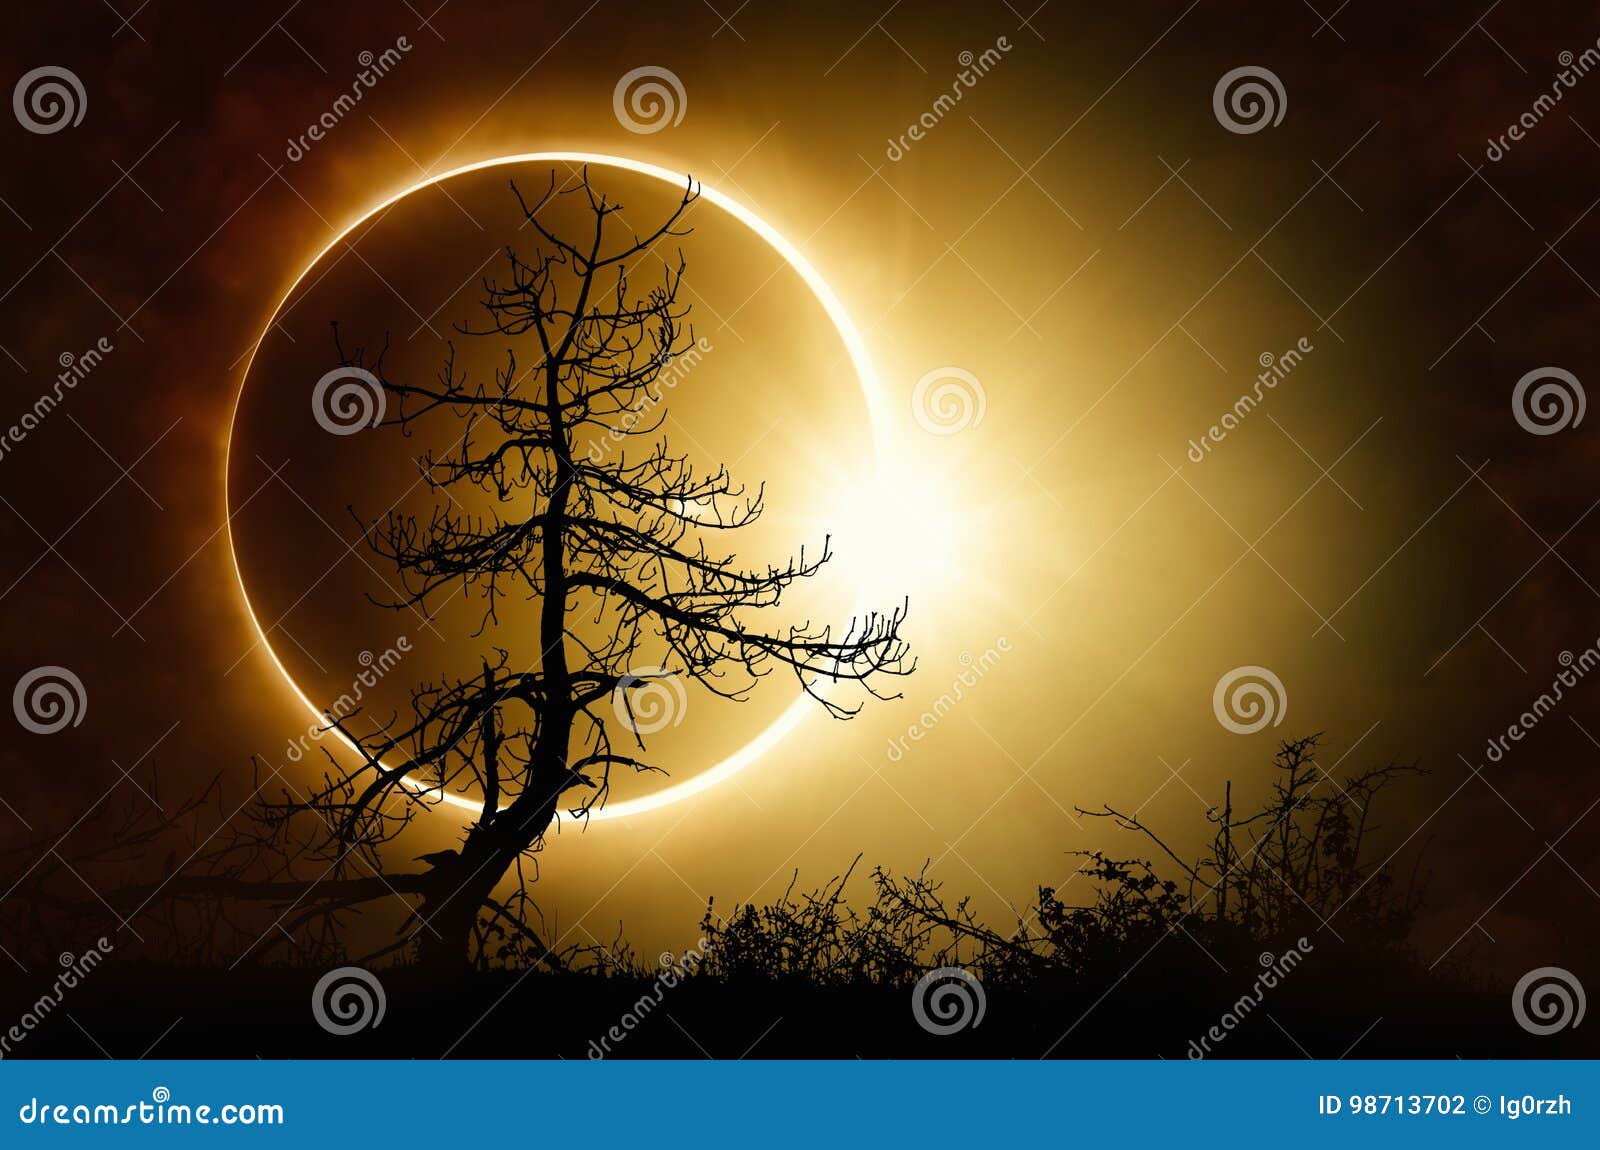 total solar eclipse in dark sky